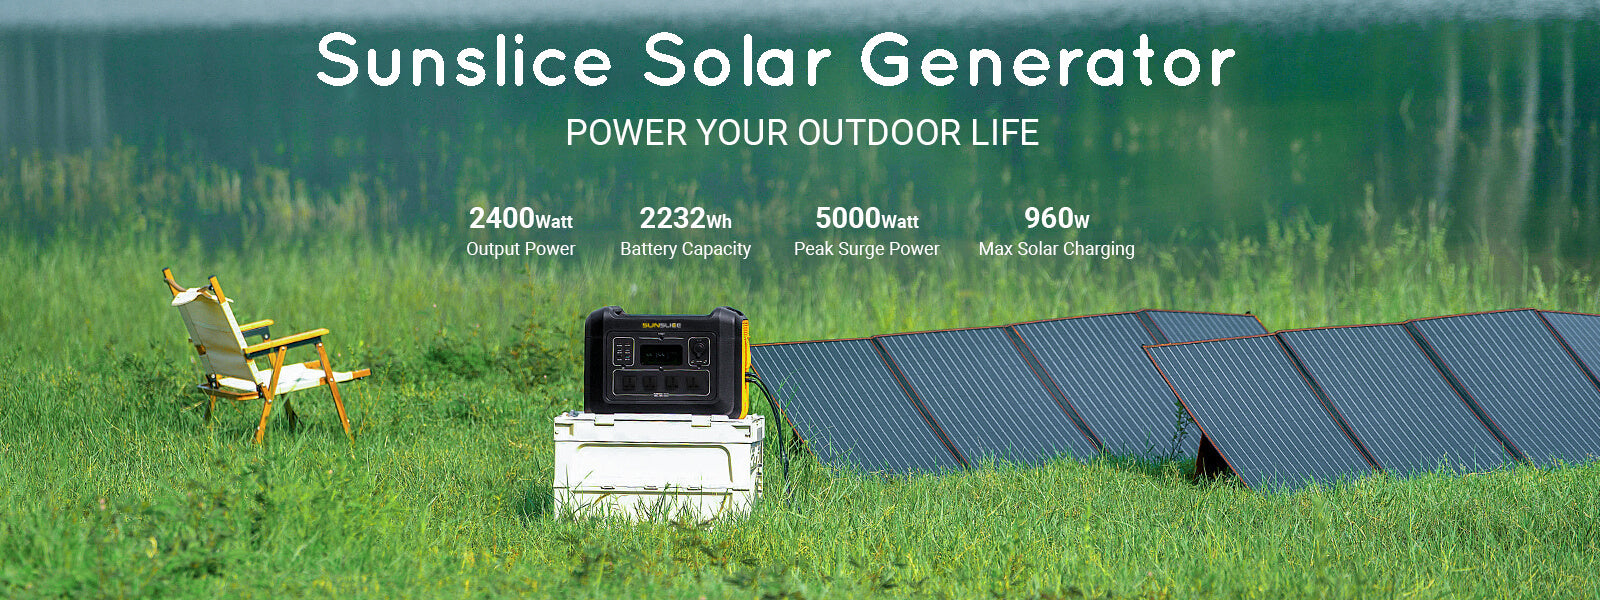 tragbares Solarpanel für Camping auf der grünen Wiese mit einem Solargenerator für zu Hause daneben